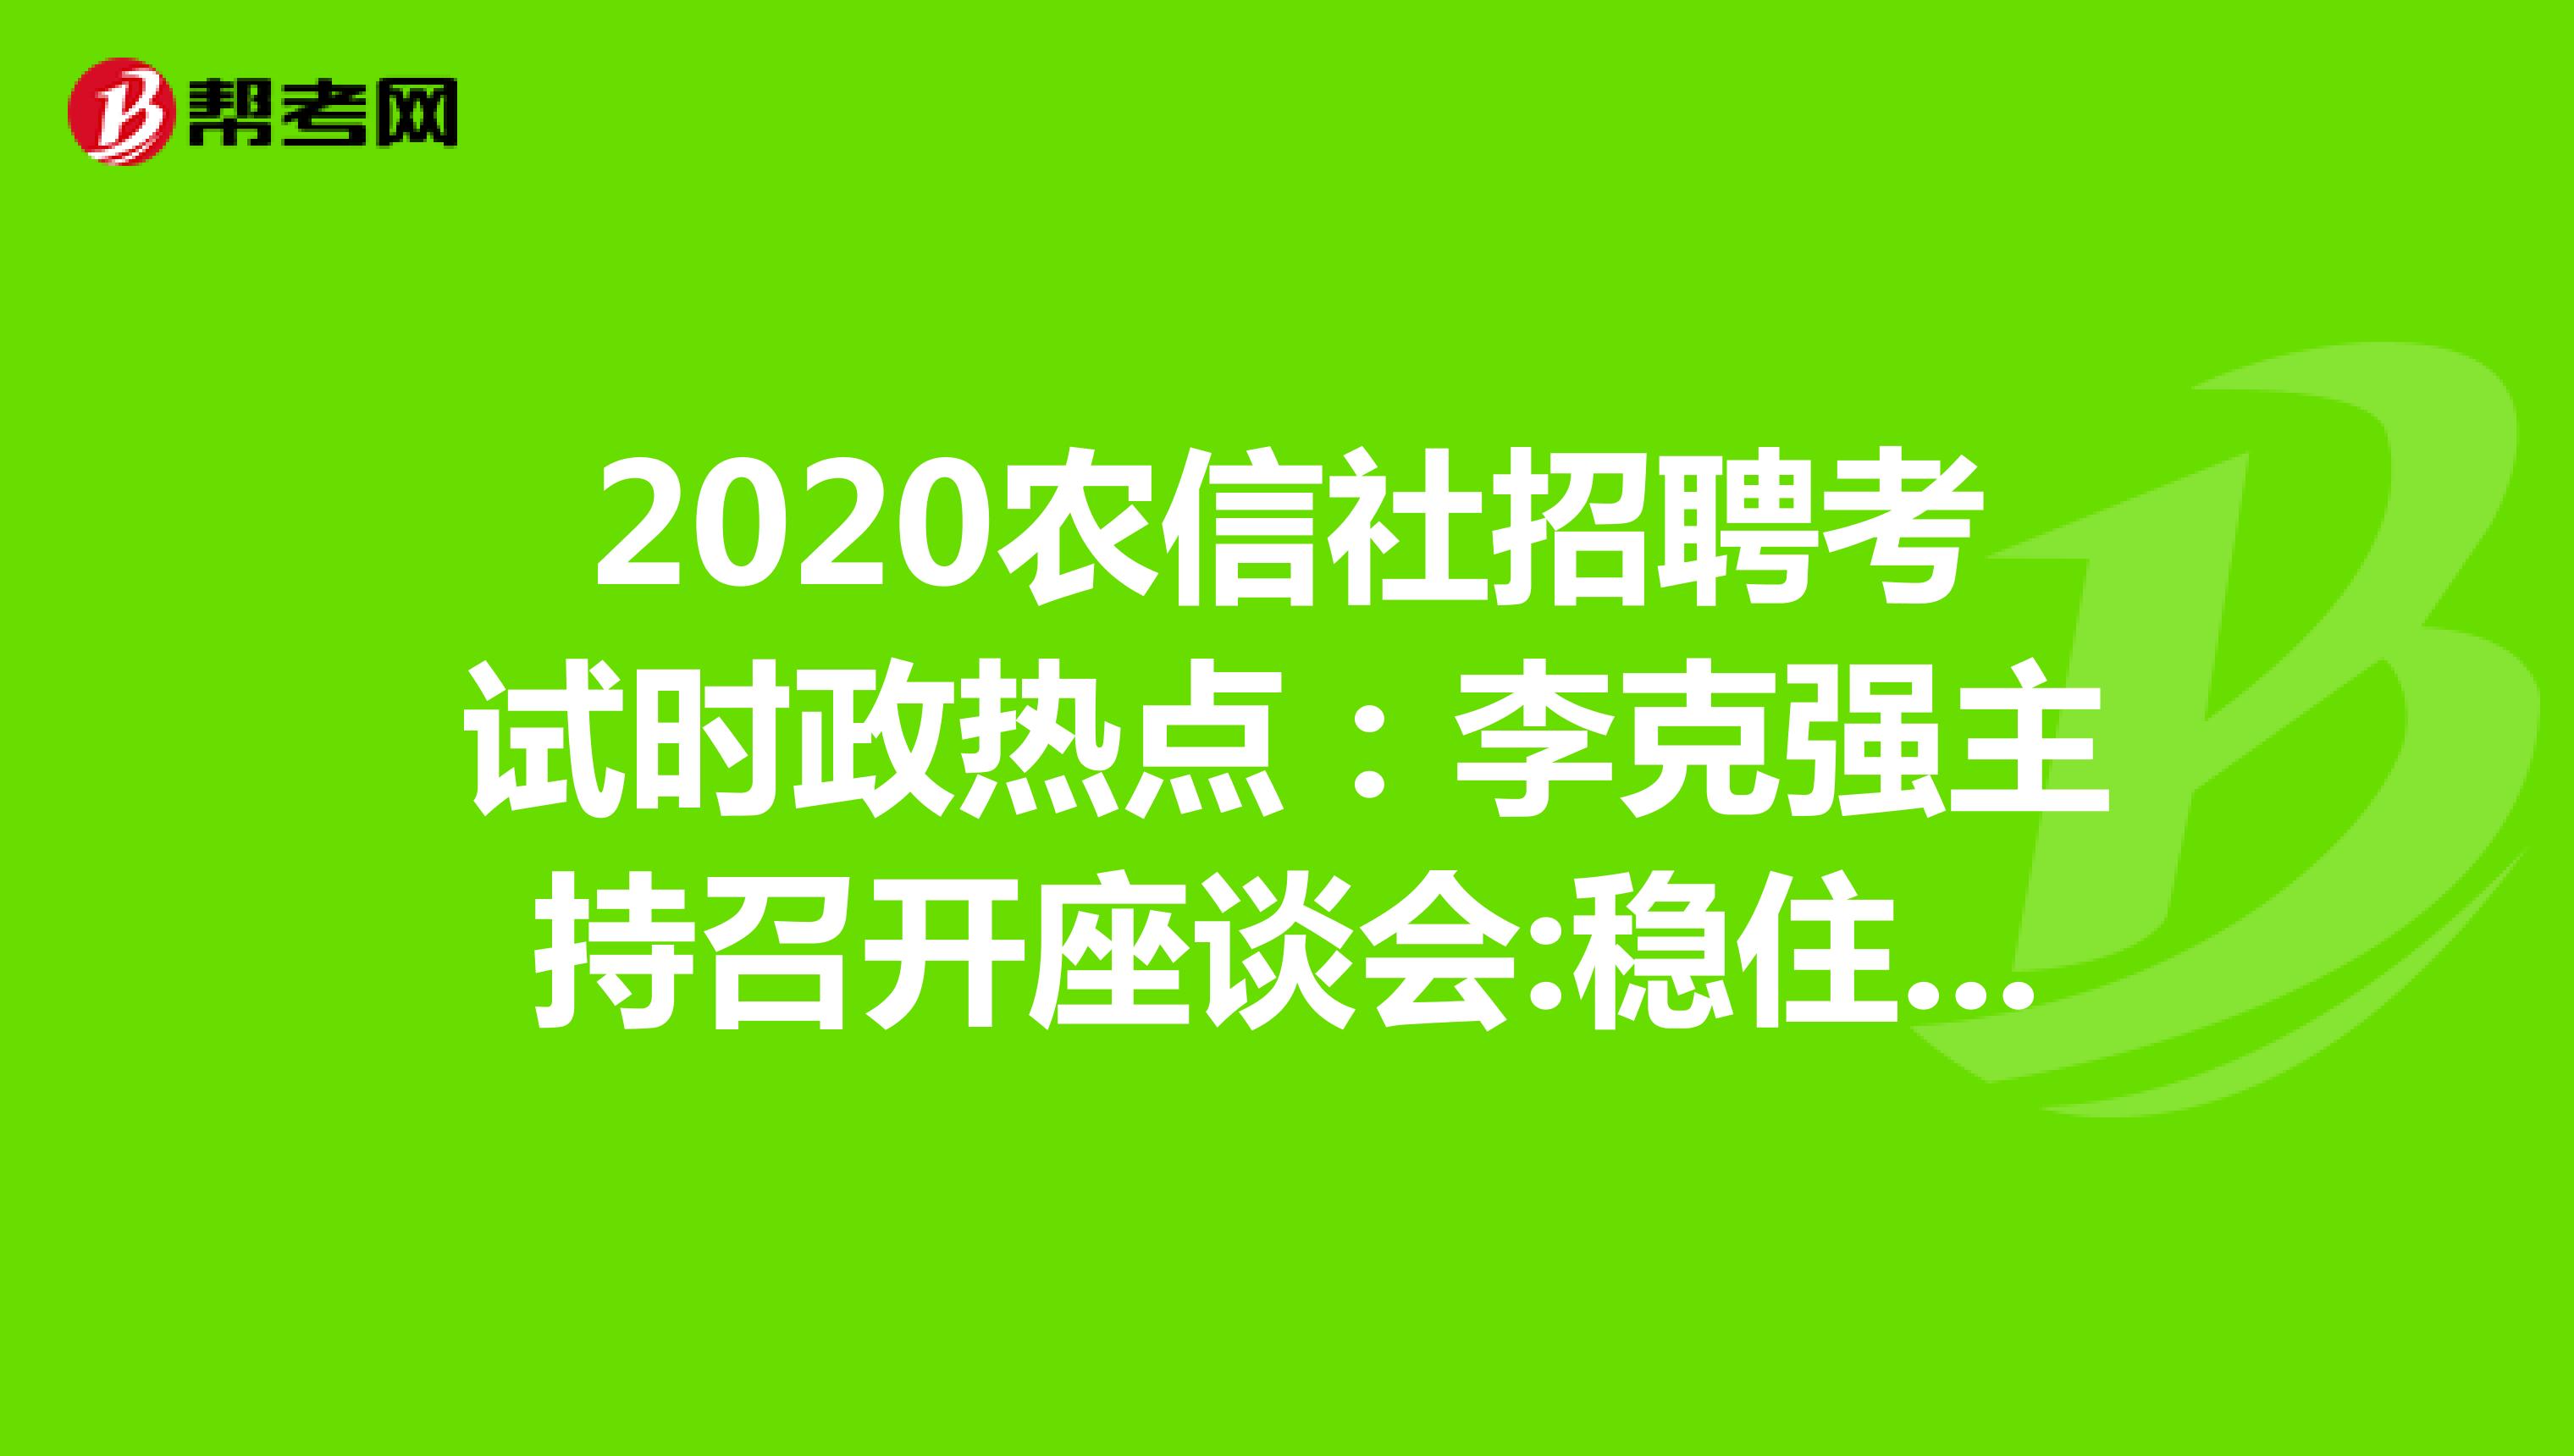 2020农信社招聘考试时政热点：李克强主持召开座谈会:稳住外贸外资基本盘。 